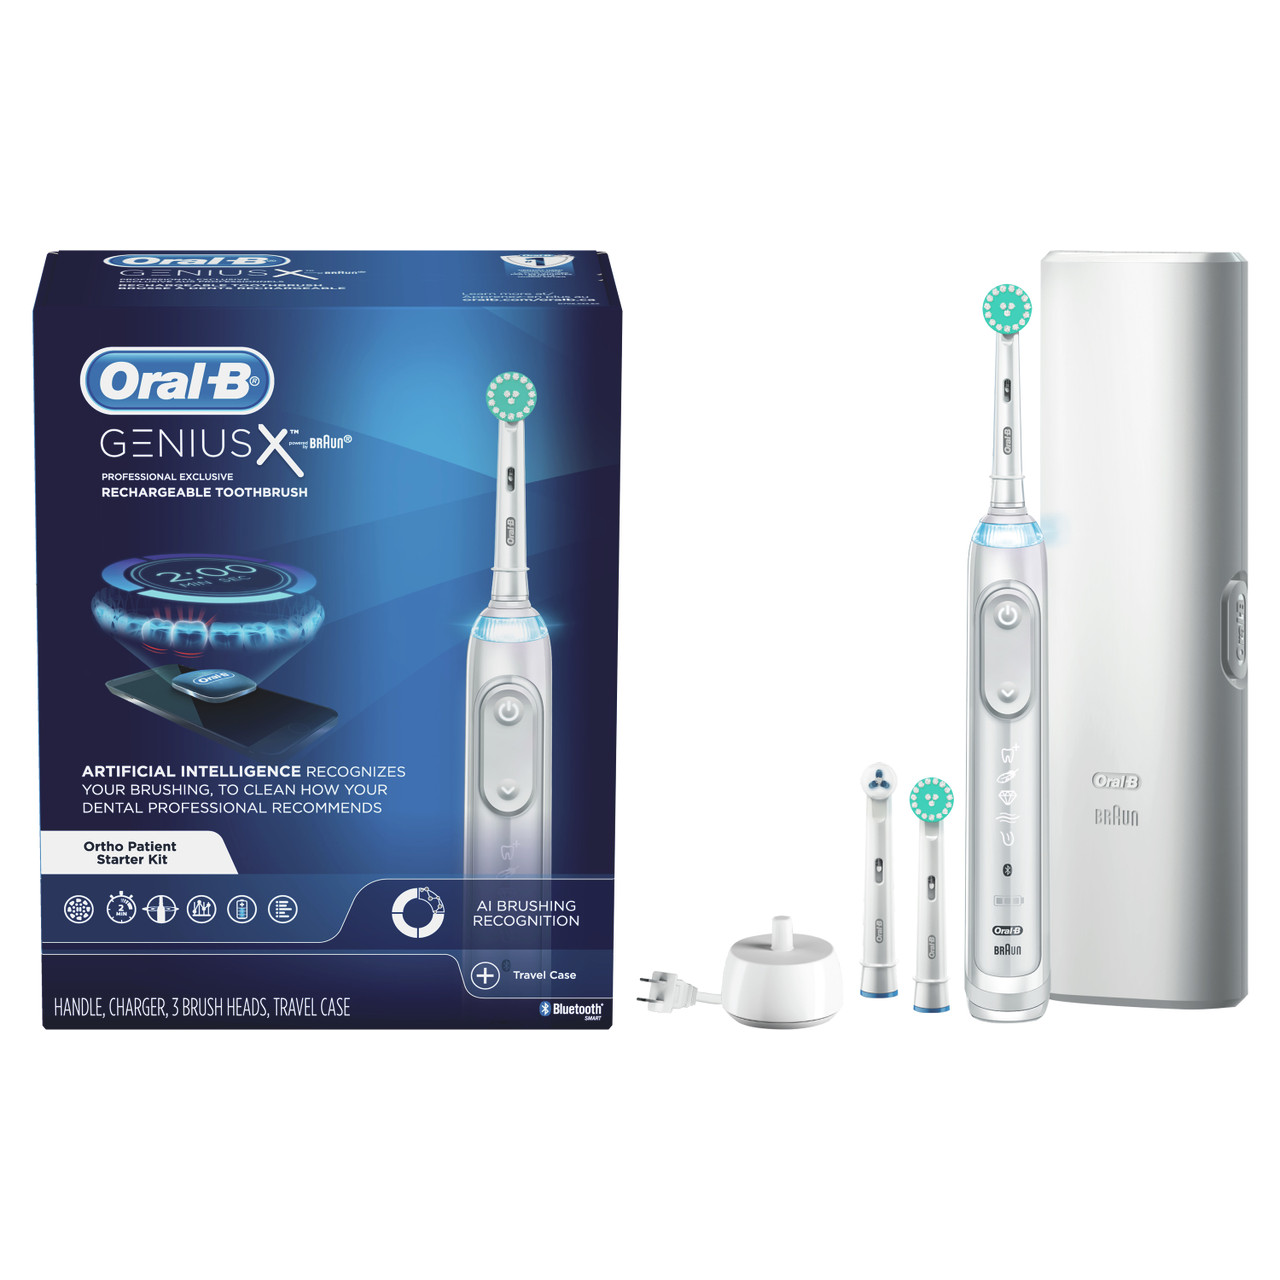 Genius X Electronic Toothbrush | Oral-B